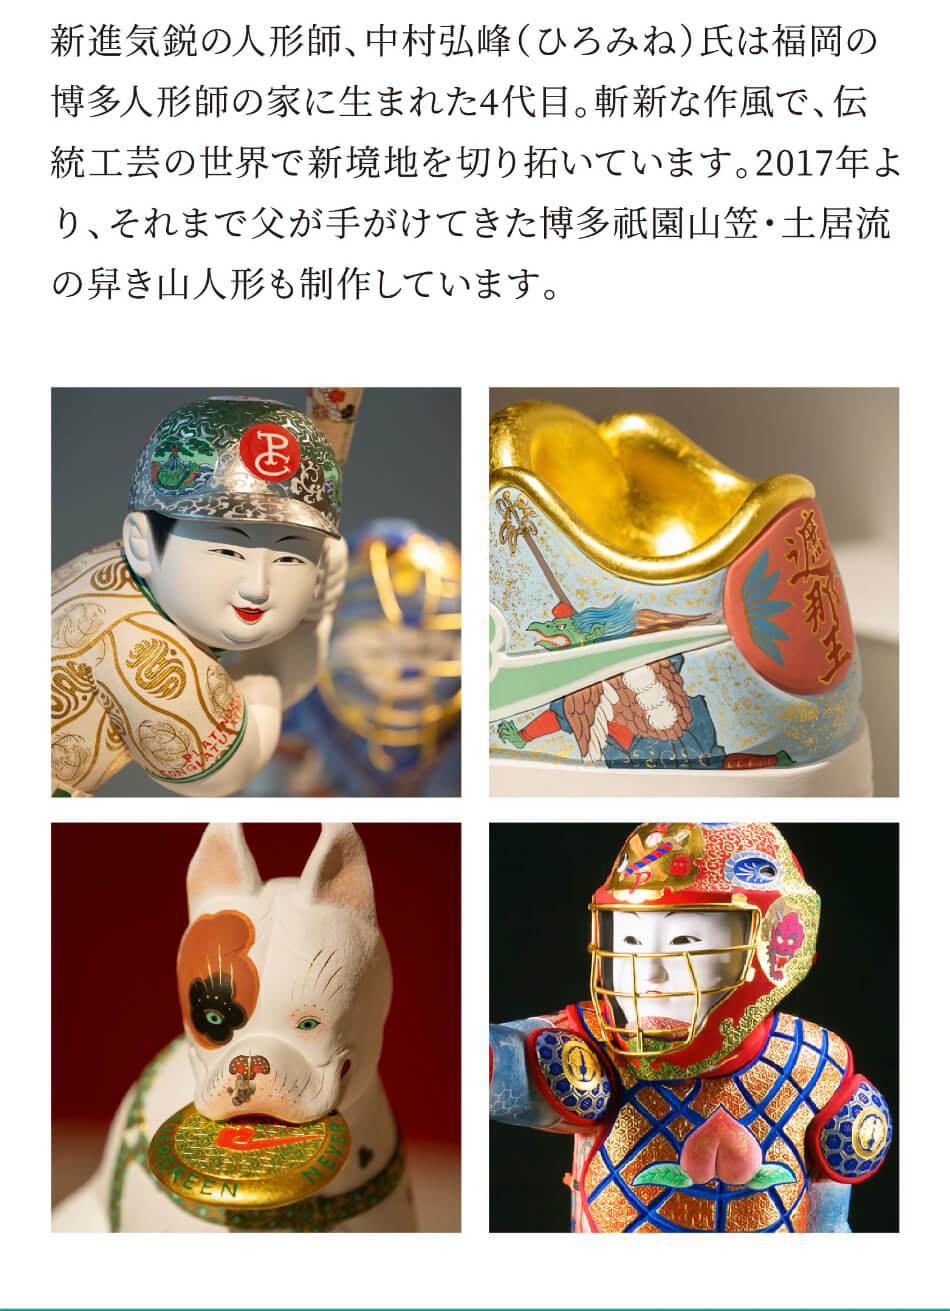 新進気鋭の人形師、中村弘峰(ひろみね)氏は福岡の博多人形師の家に生まれた4代目。斬新な作風で、伝統工芸の世界で新境地を切り拓いています。2017年より、それまで父が手がけてきた博多祇園山笠・土居流の舁き山人形も制作しています。